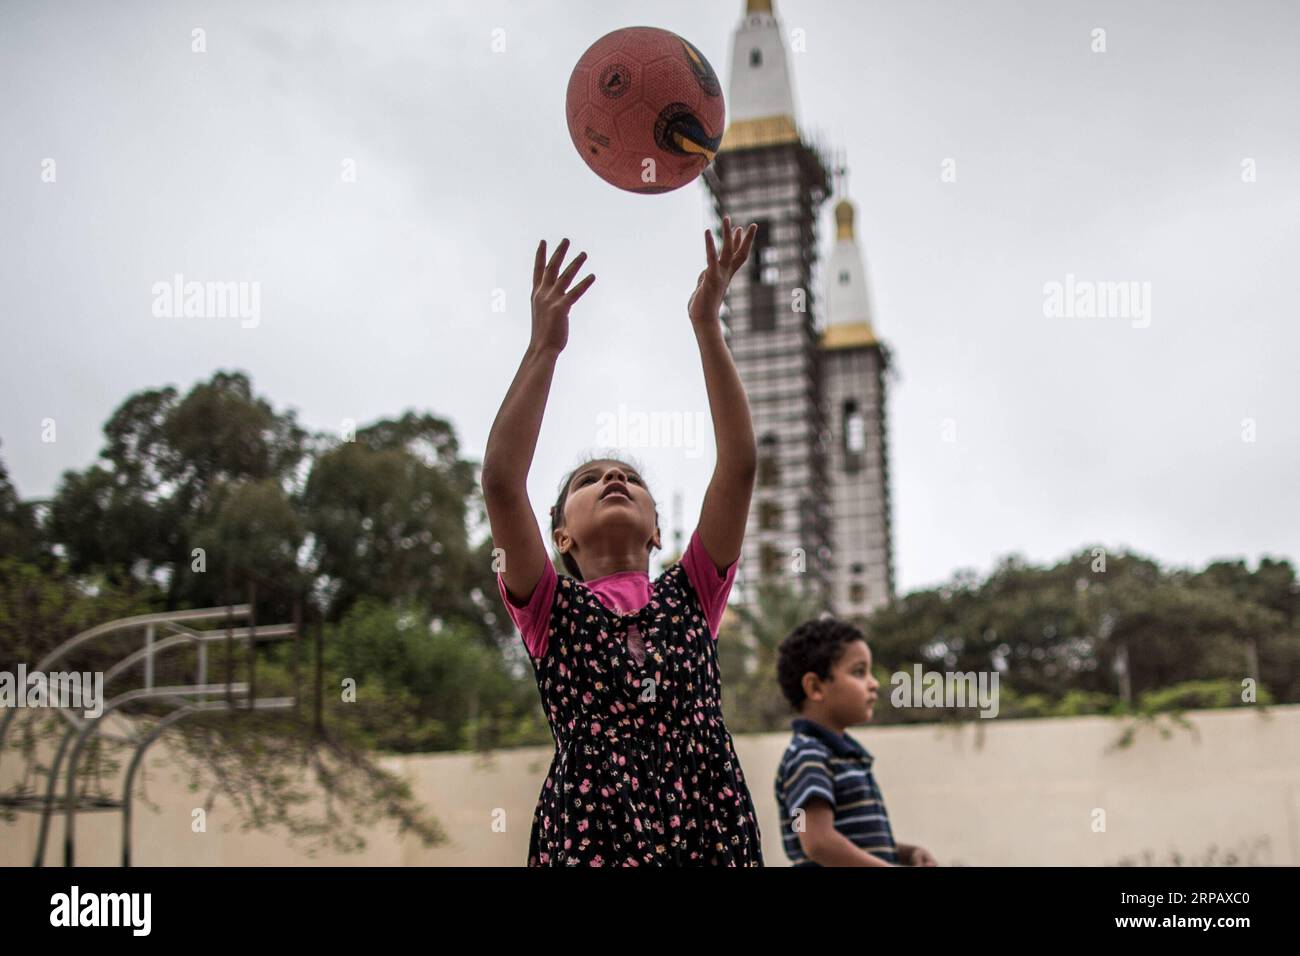 (190520) -- TRIPOLI, le 20 mai 2019 -- des enfants déplacés jouent dans une école où des dizaines de familles cherchent refuge après avoir fui leurs maisons, à Tripoli, en Libye, le 20 mai 2019. La Libye souffre de l'escalade de la violence et de l'instabilité politique depuis la chute du défunt dirigeant Mouammar Kadhafi en 2011. LIBYE-TRIPOLI-PERSONNES DÉPLACÉES AmruxSalahuddien PUBLICATIONxNOTxINxCHN Banque D'Images